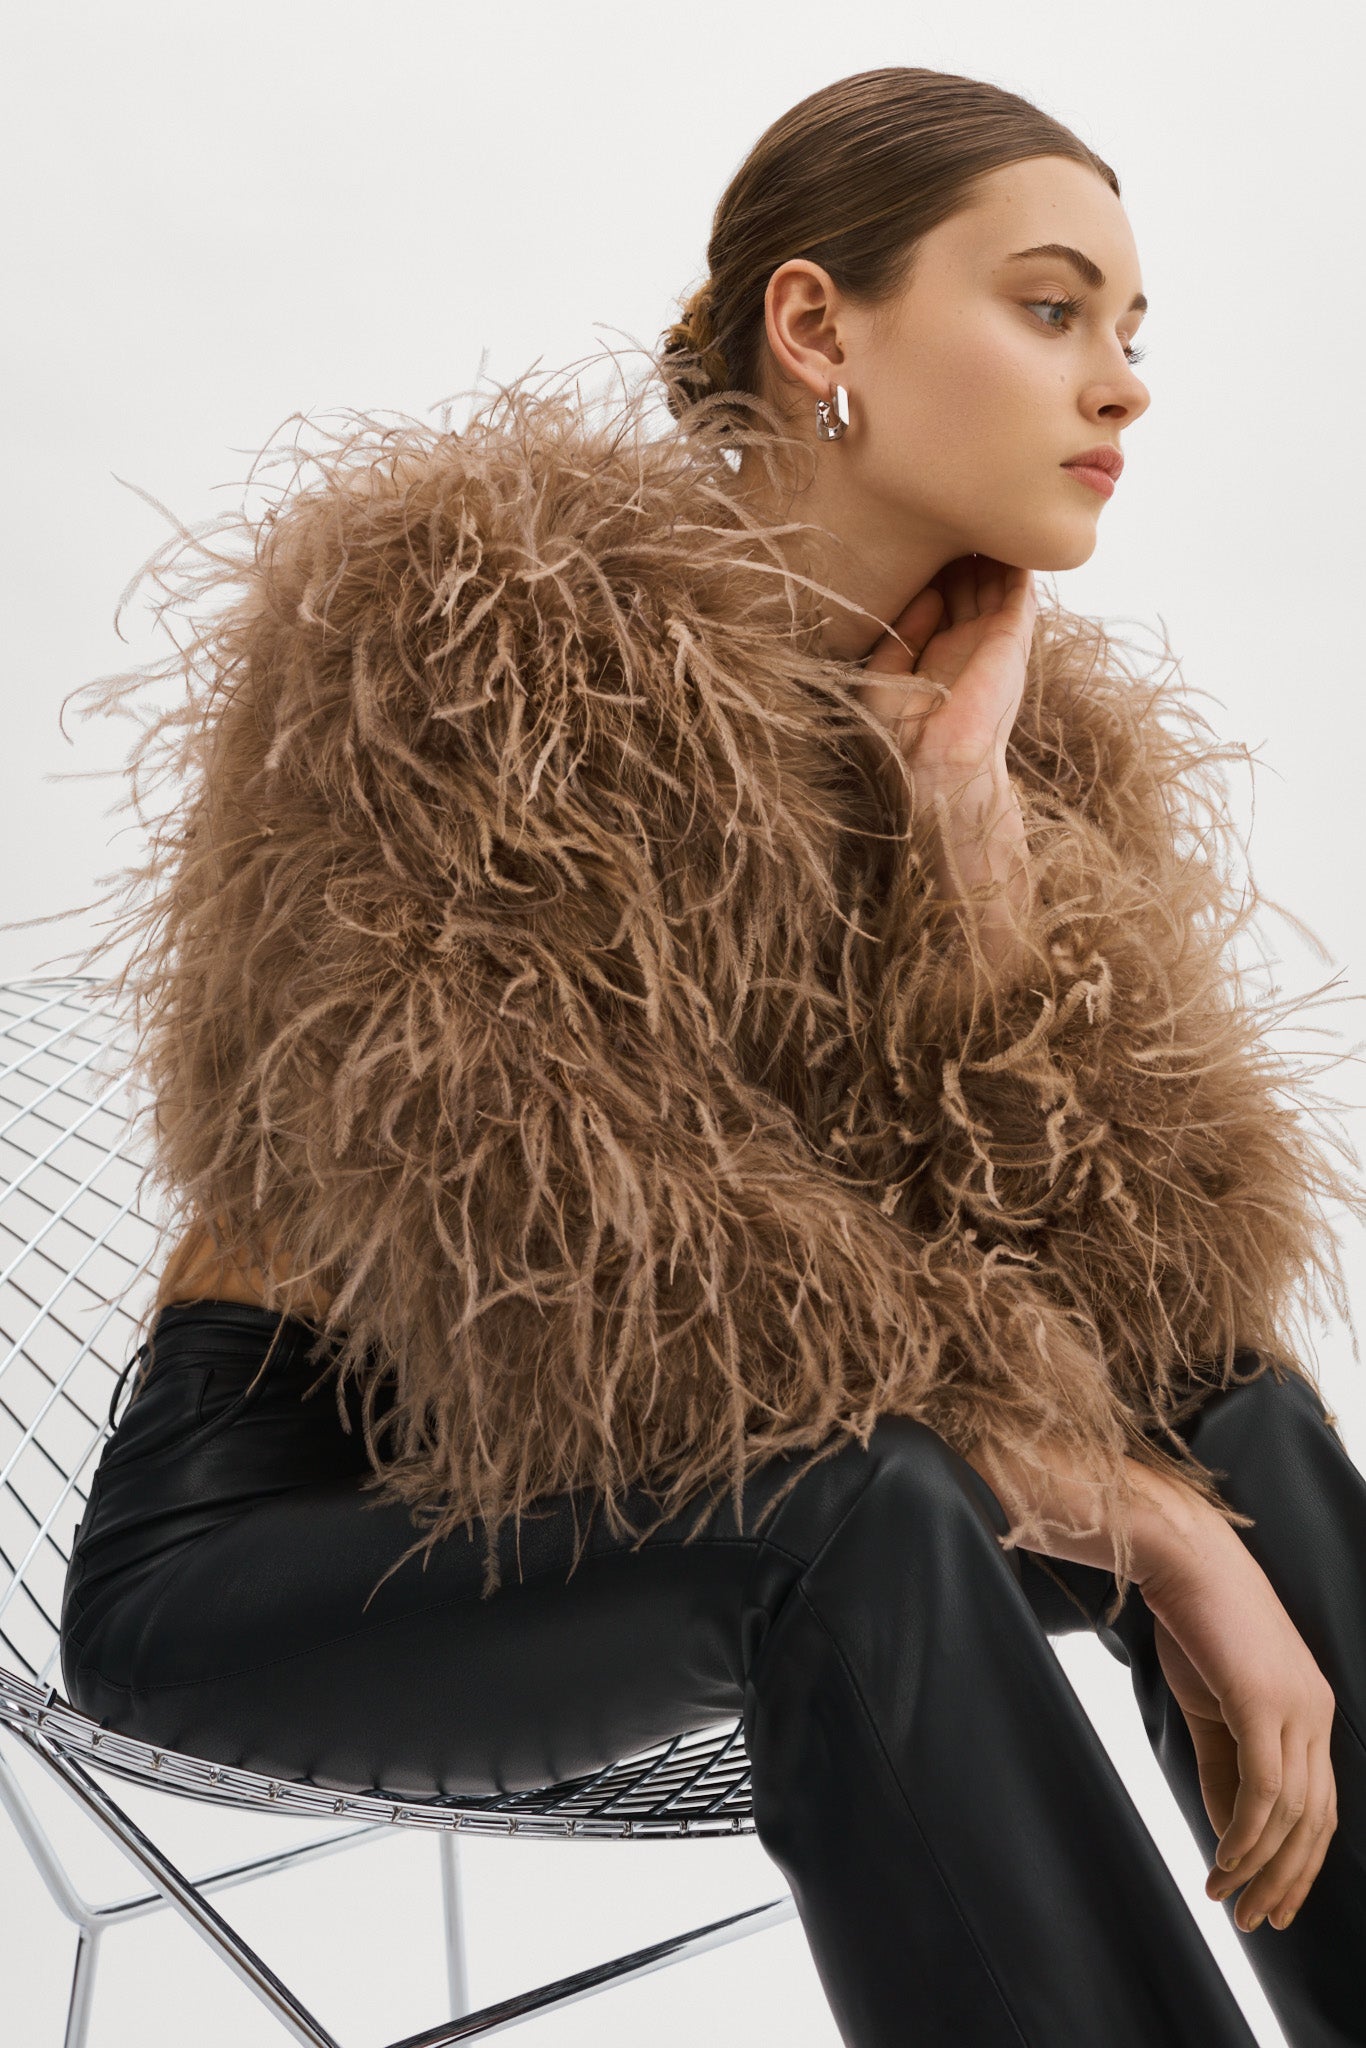 Lamarque Hallie | Ostrich Feather Jacket, Black / L